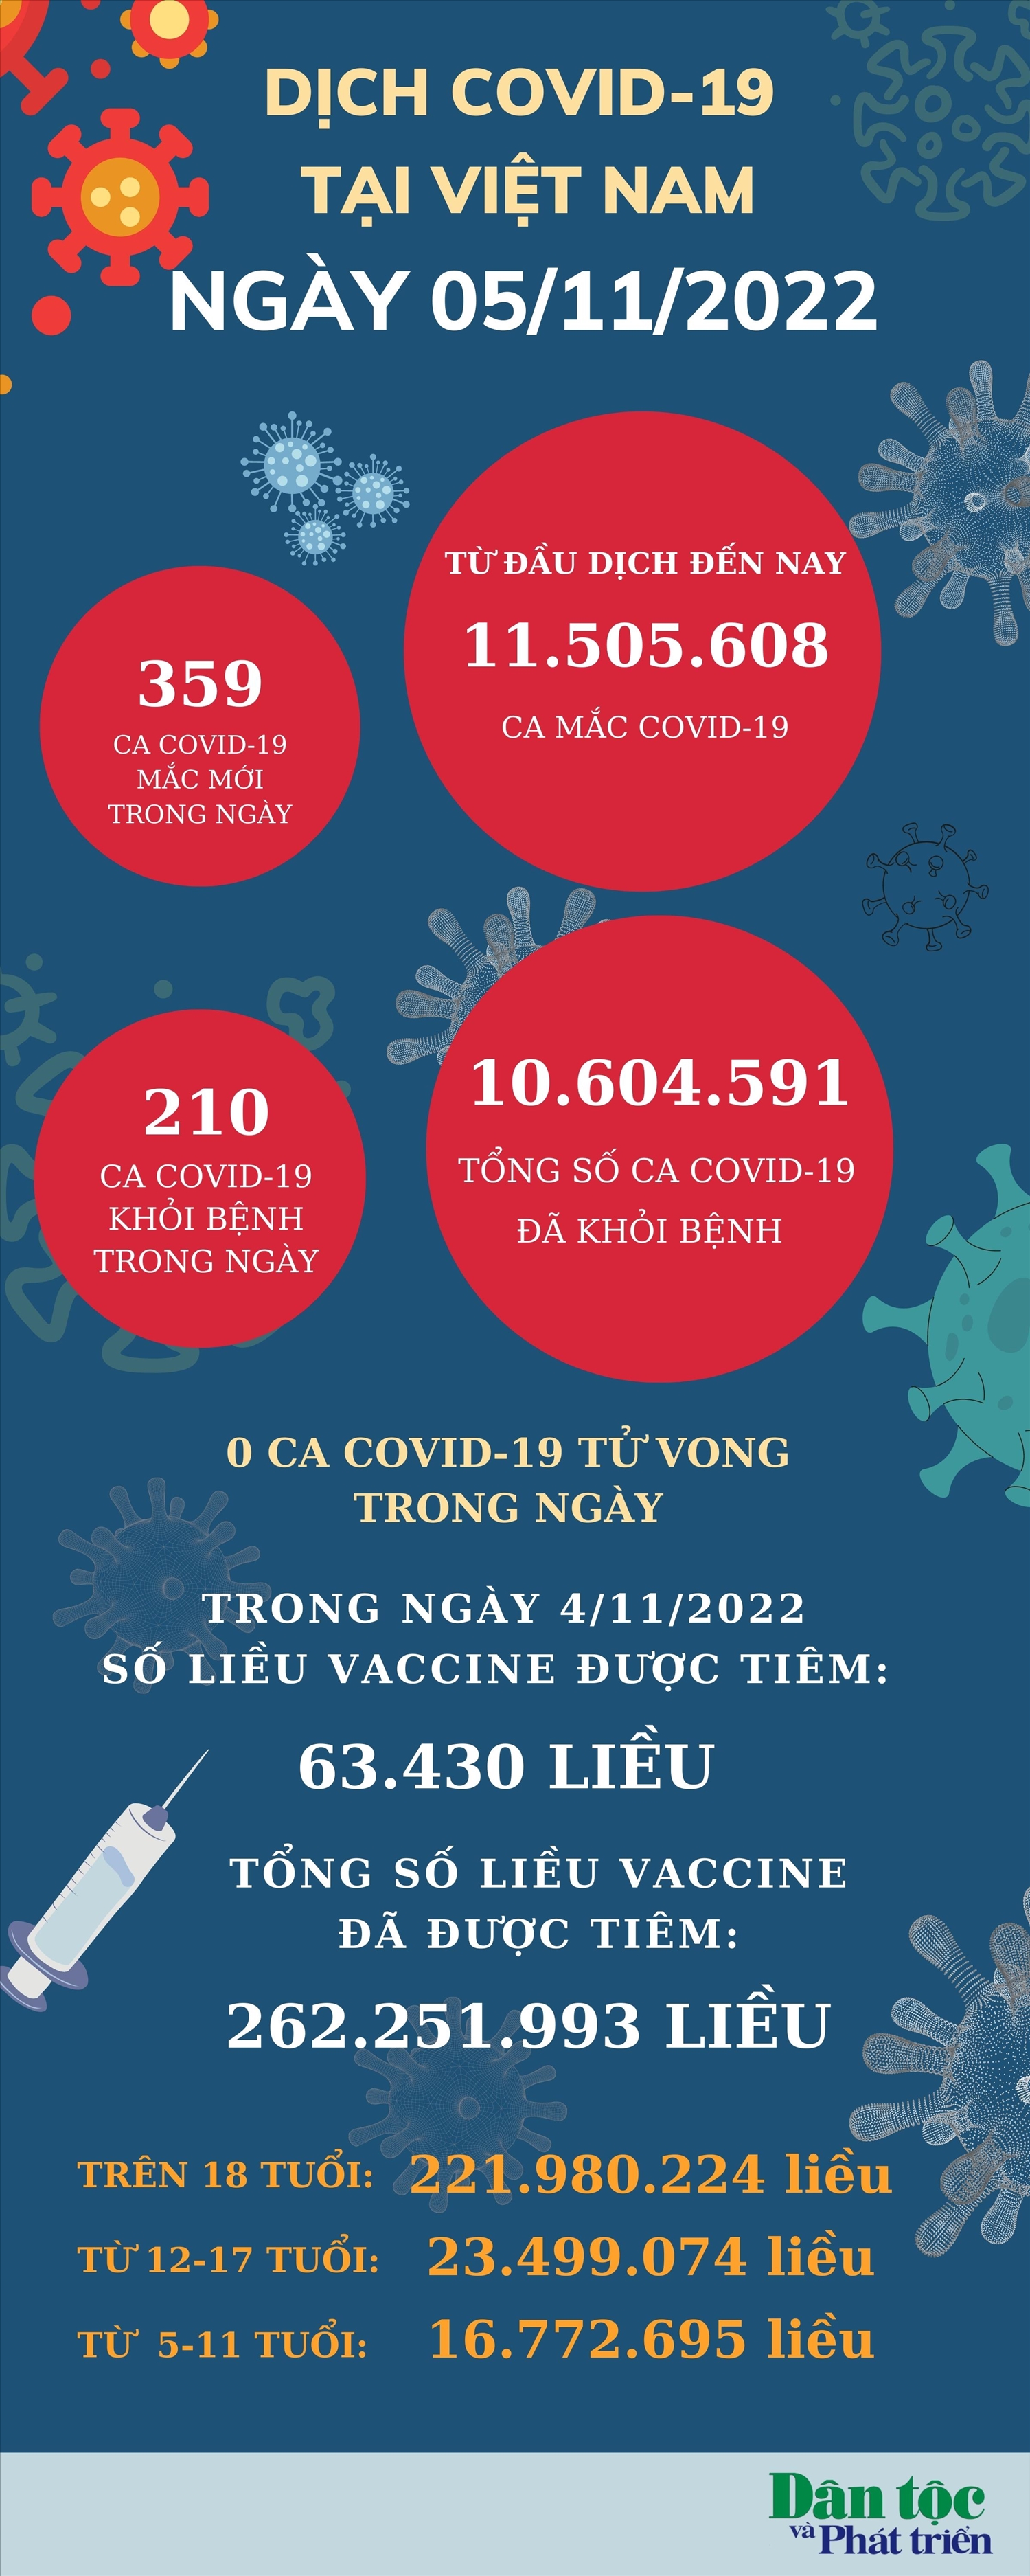 Ngày 5/11: Việt Nam có 359 ca mắc mới COVID-19